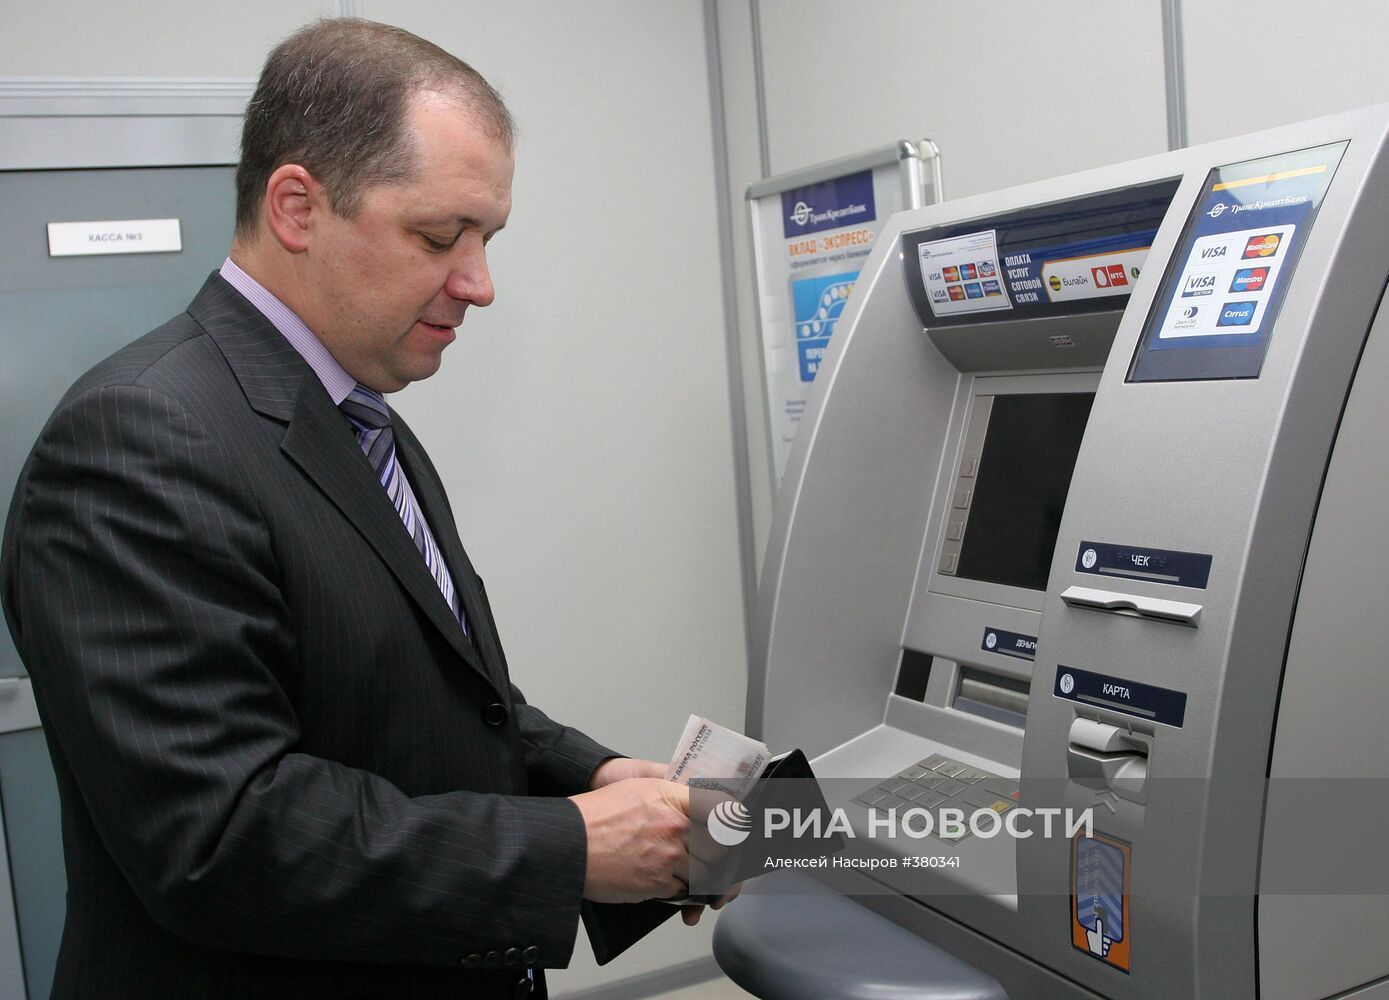 Снятие наличных денег через банкомат "ТрансКредитБанка"